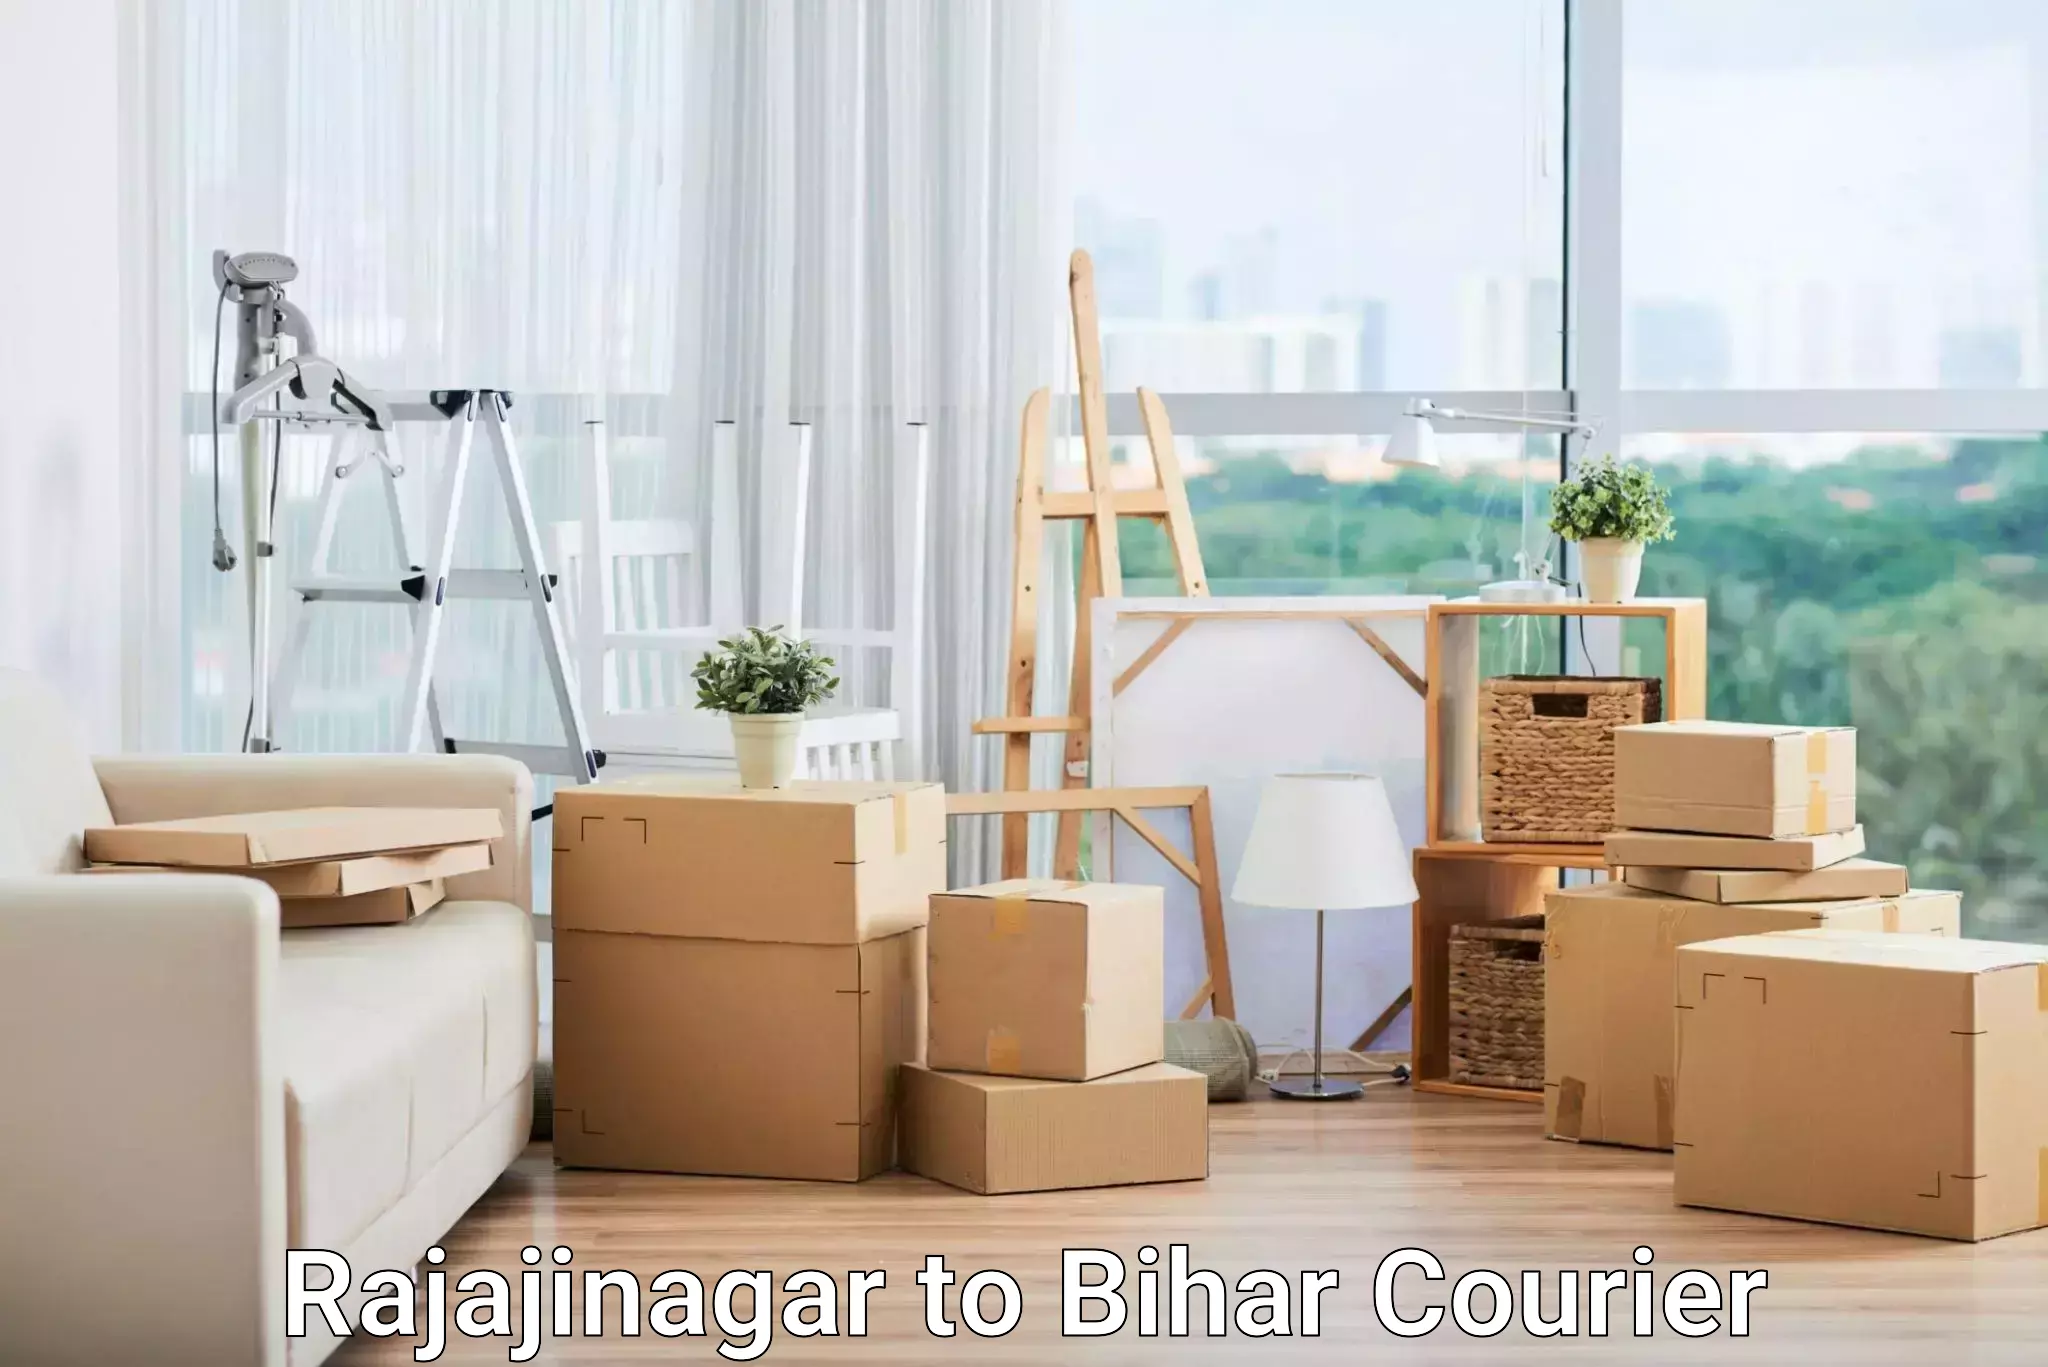 Digital courier platforms Rajajinagar to Bihar